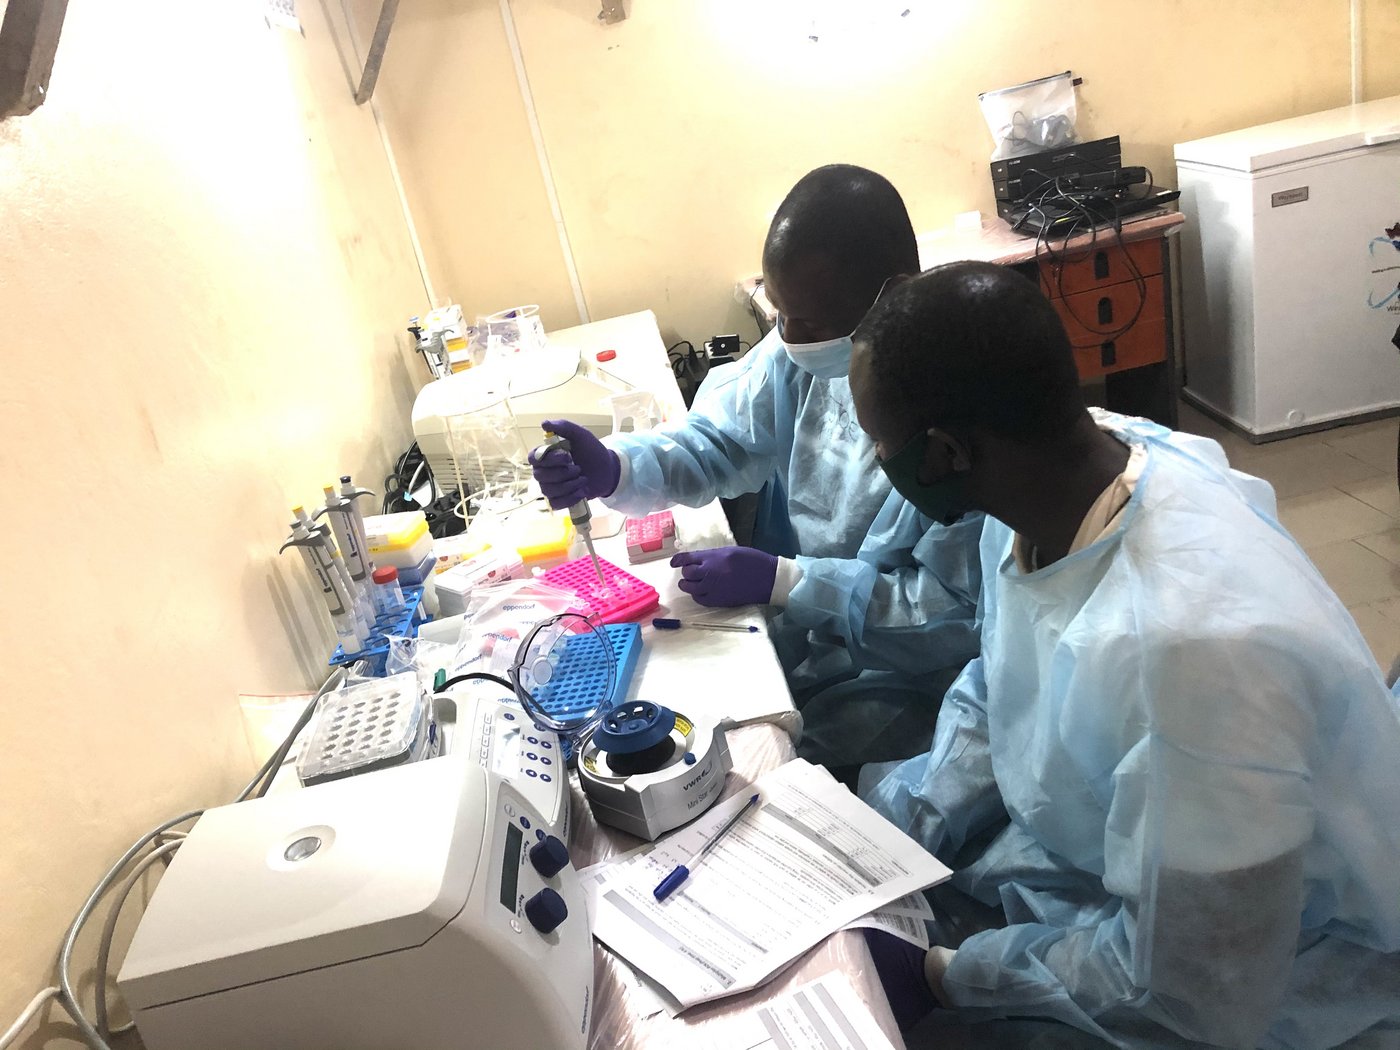 Das Bild zeigt zwei afrikanische Forschende in einer Laborsituation